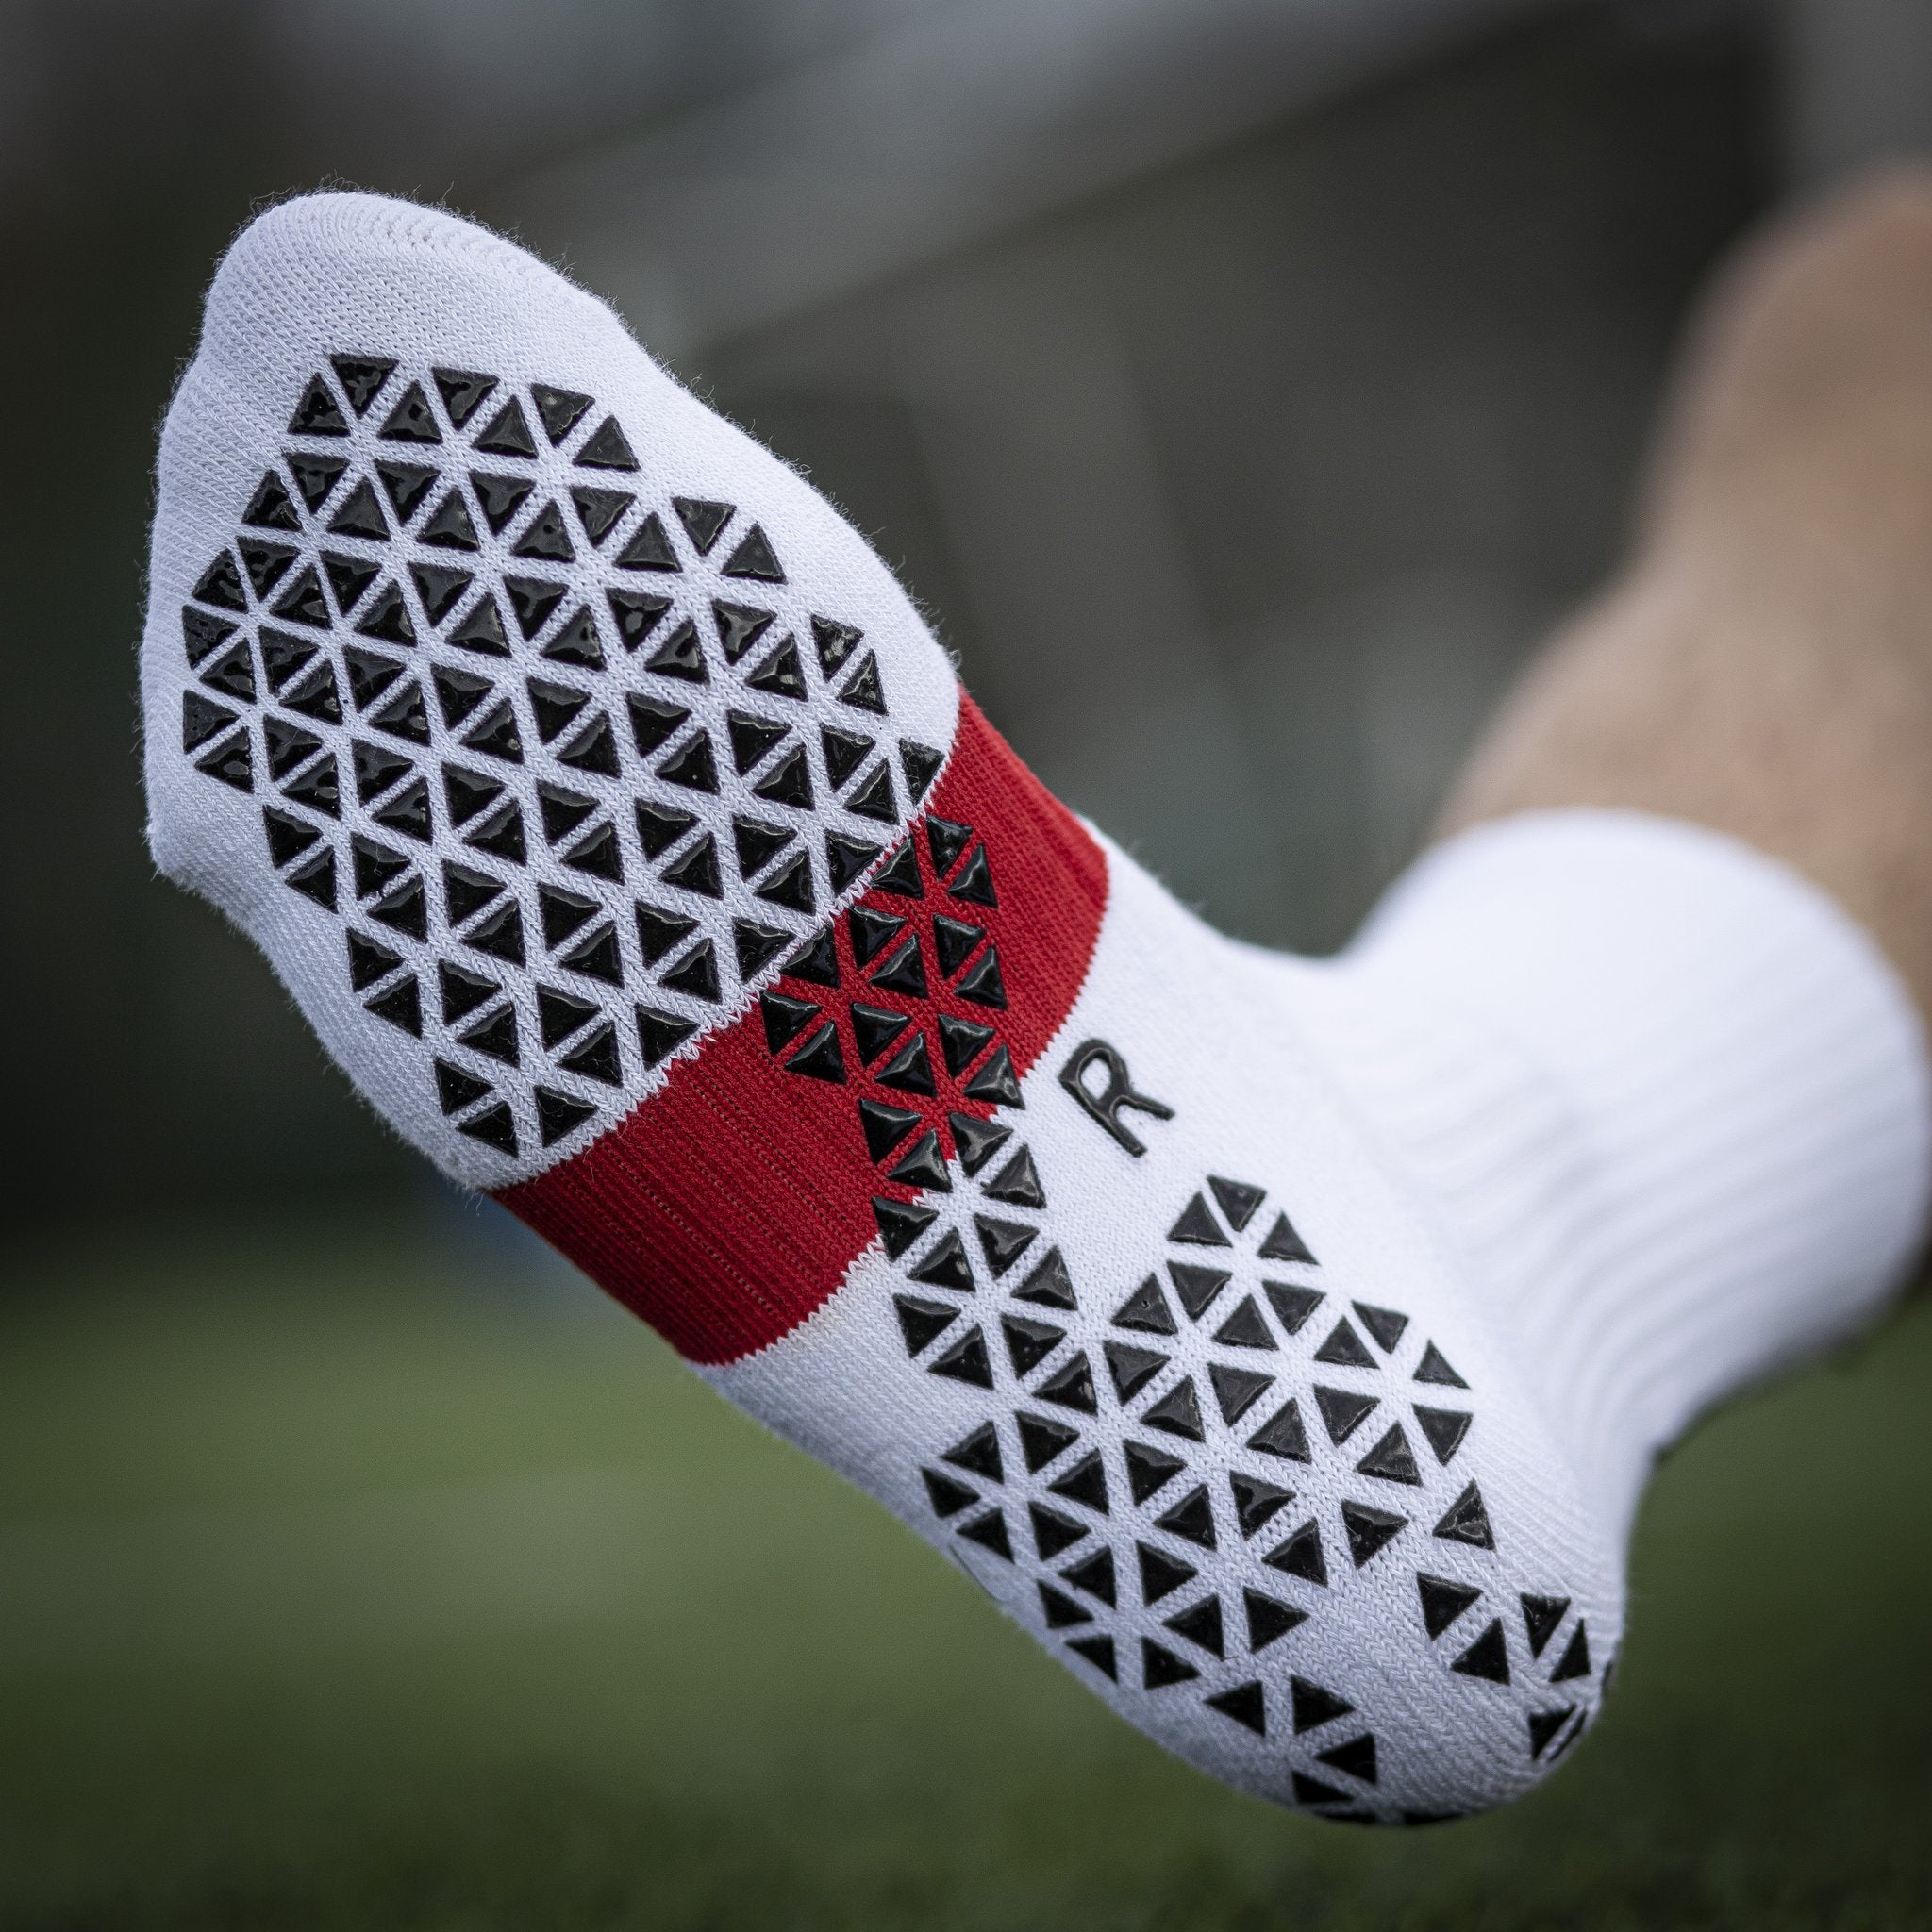 Pure Grip Socks Pro | SR4U | GRIP SOCCER SOCKS - Niky's Sports